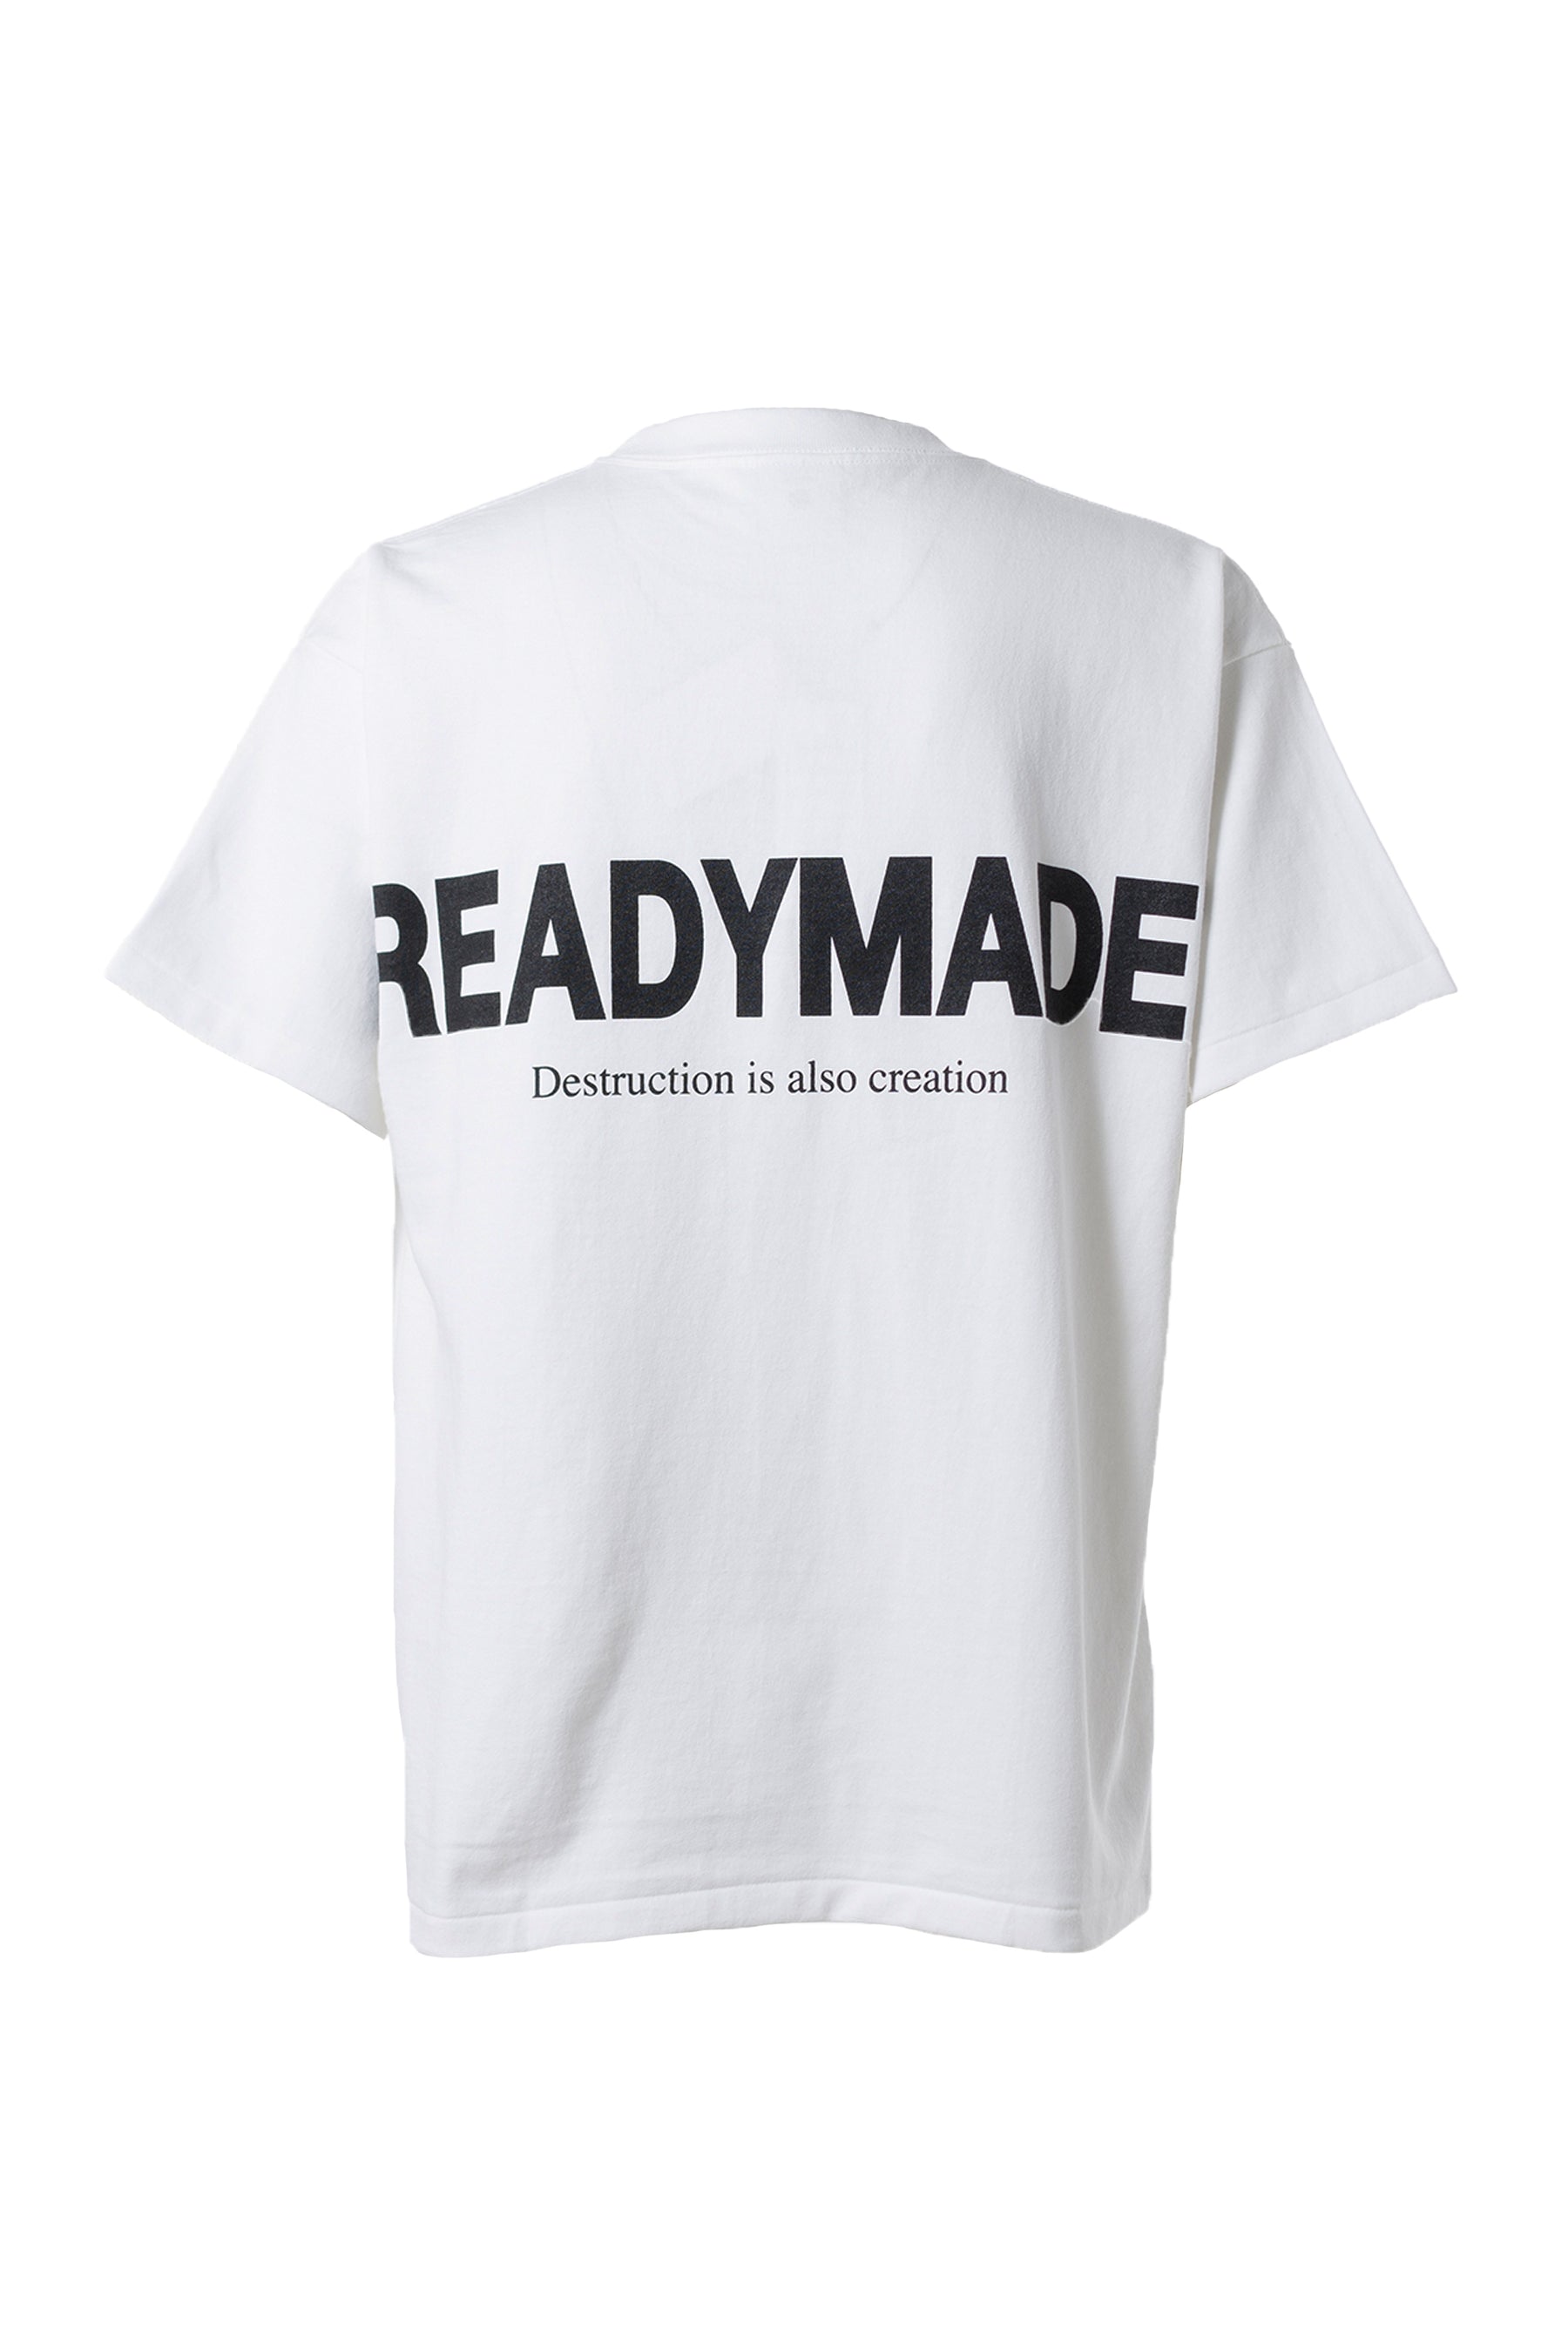 新品 レディメイド L サイズ Tシャツ READYMADE セブンスヘブン